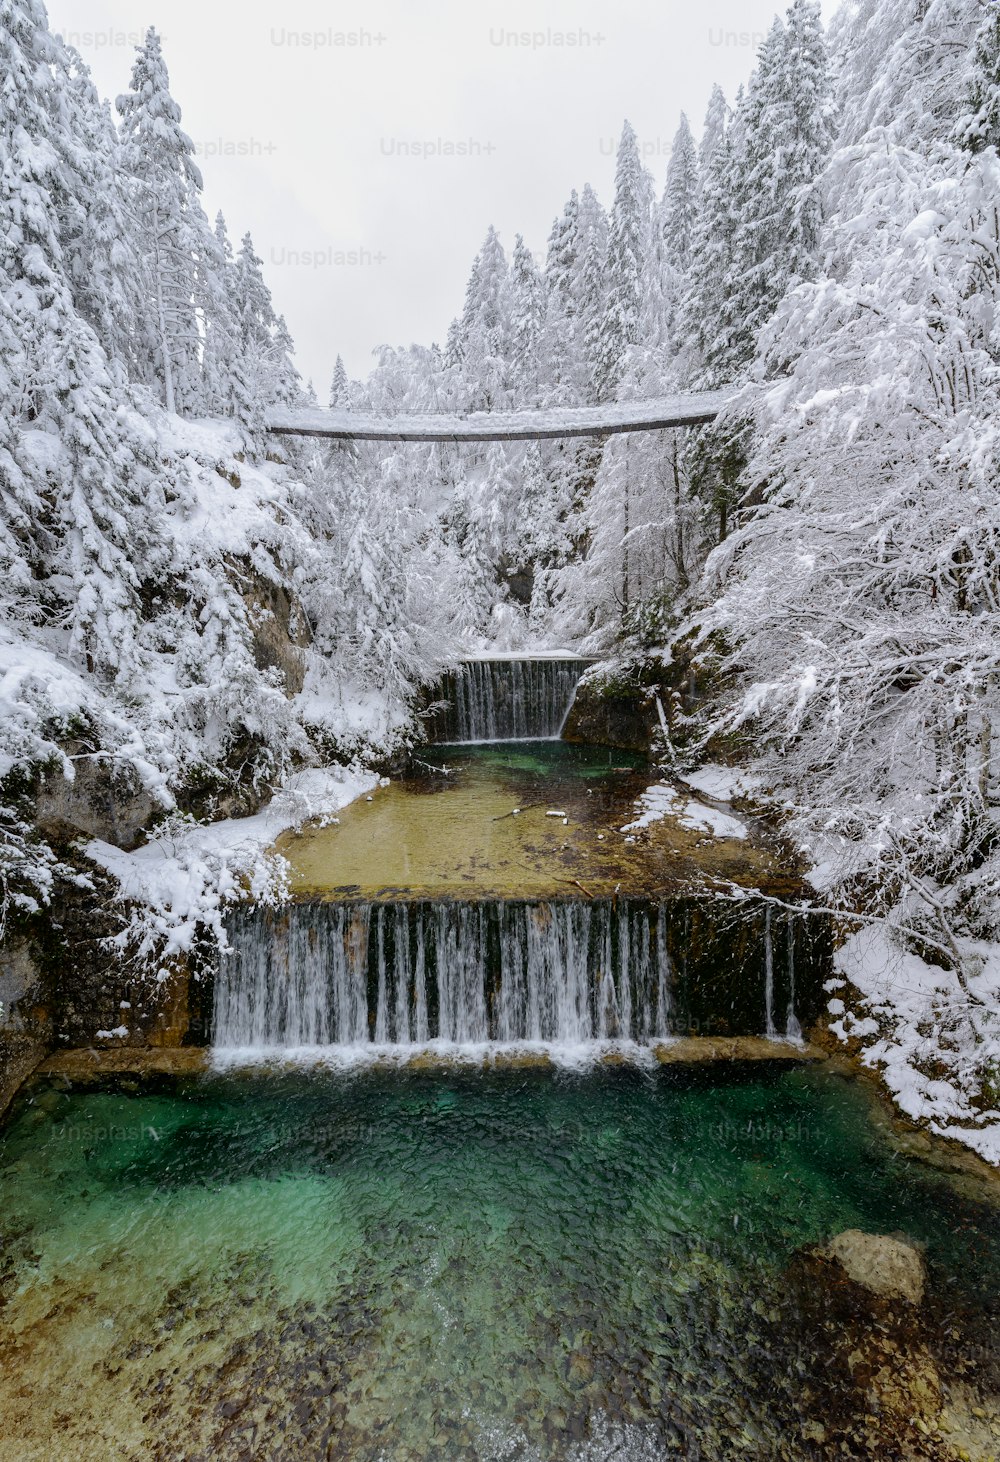 Una cascada en medio de un bosque nevado